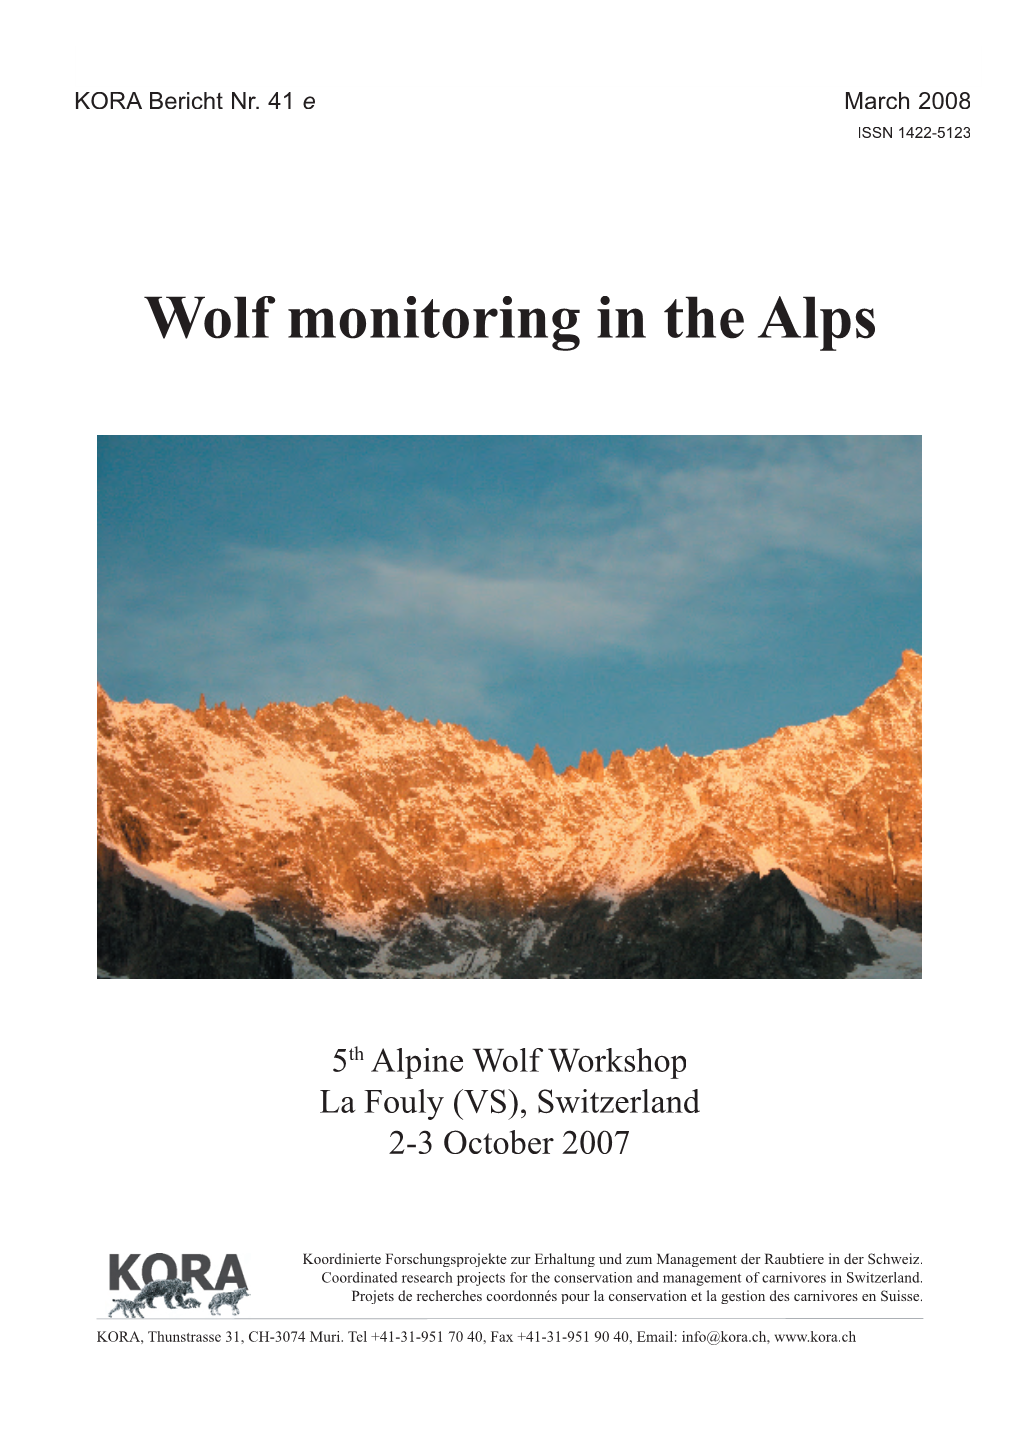 Fifth Alpine Wolf Workshop